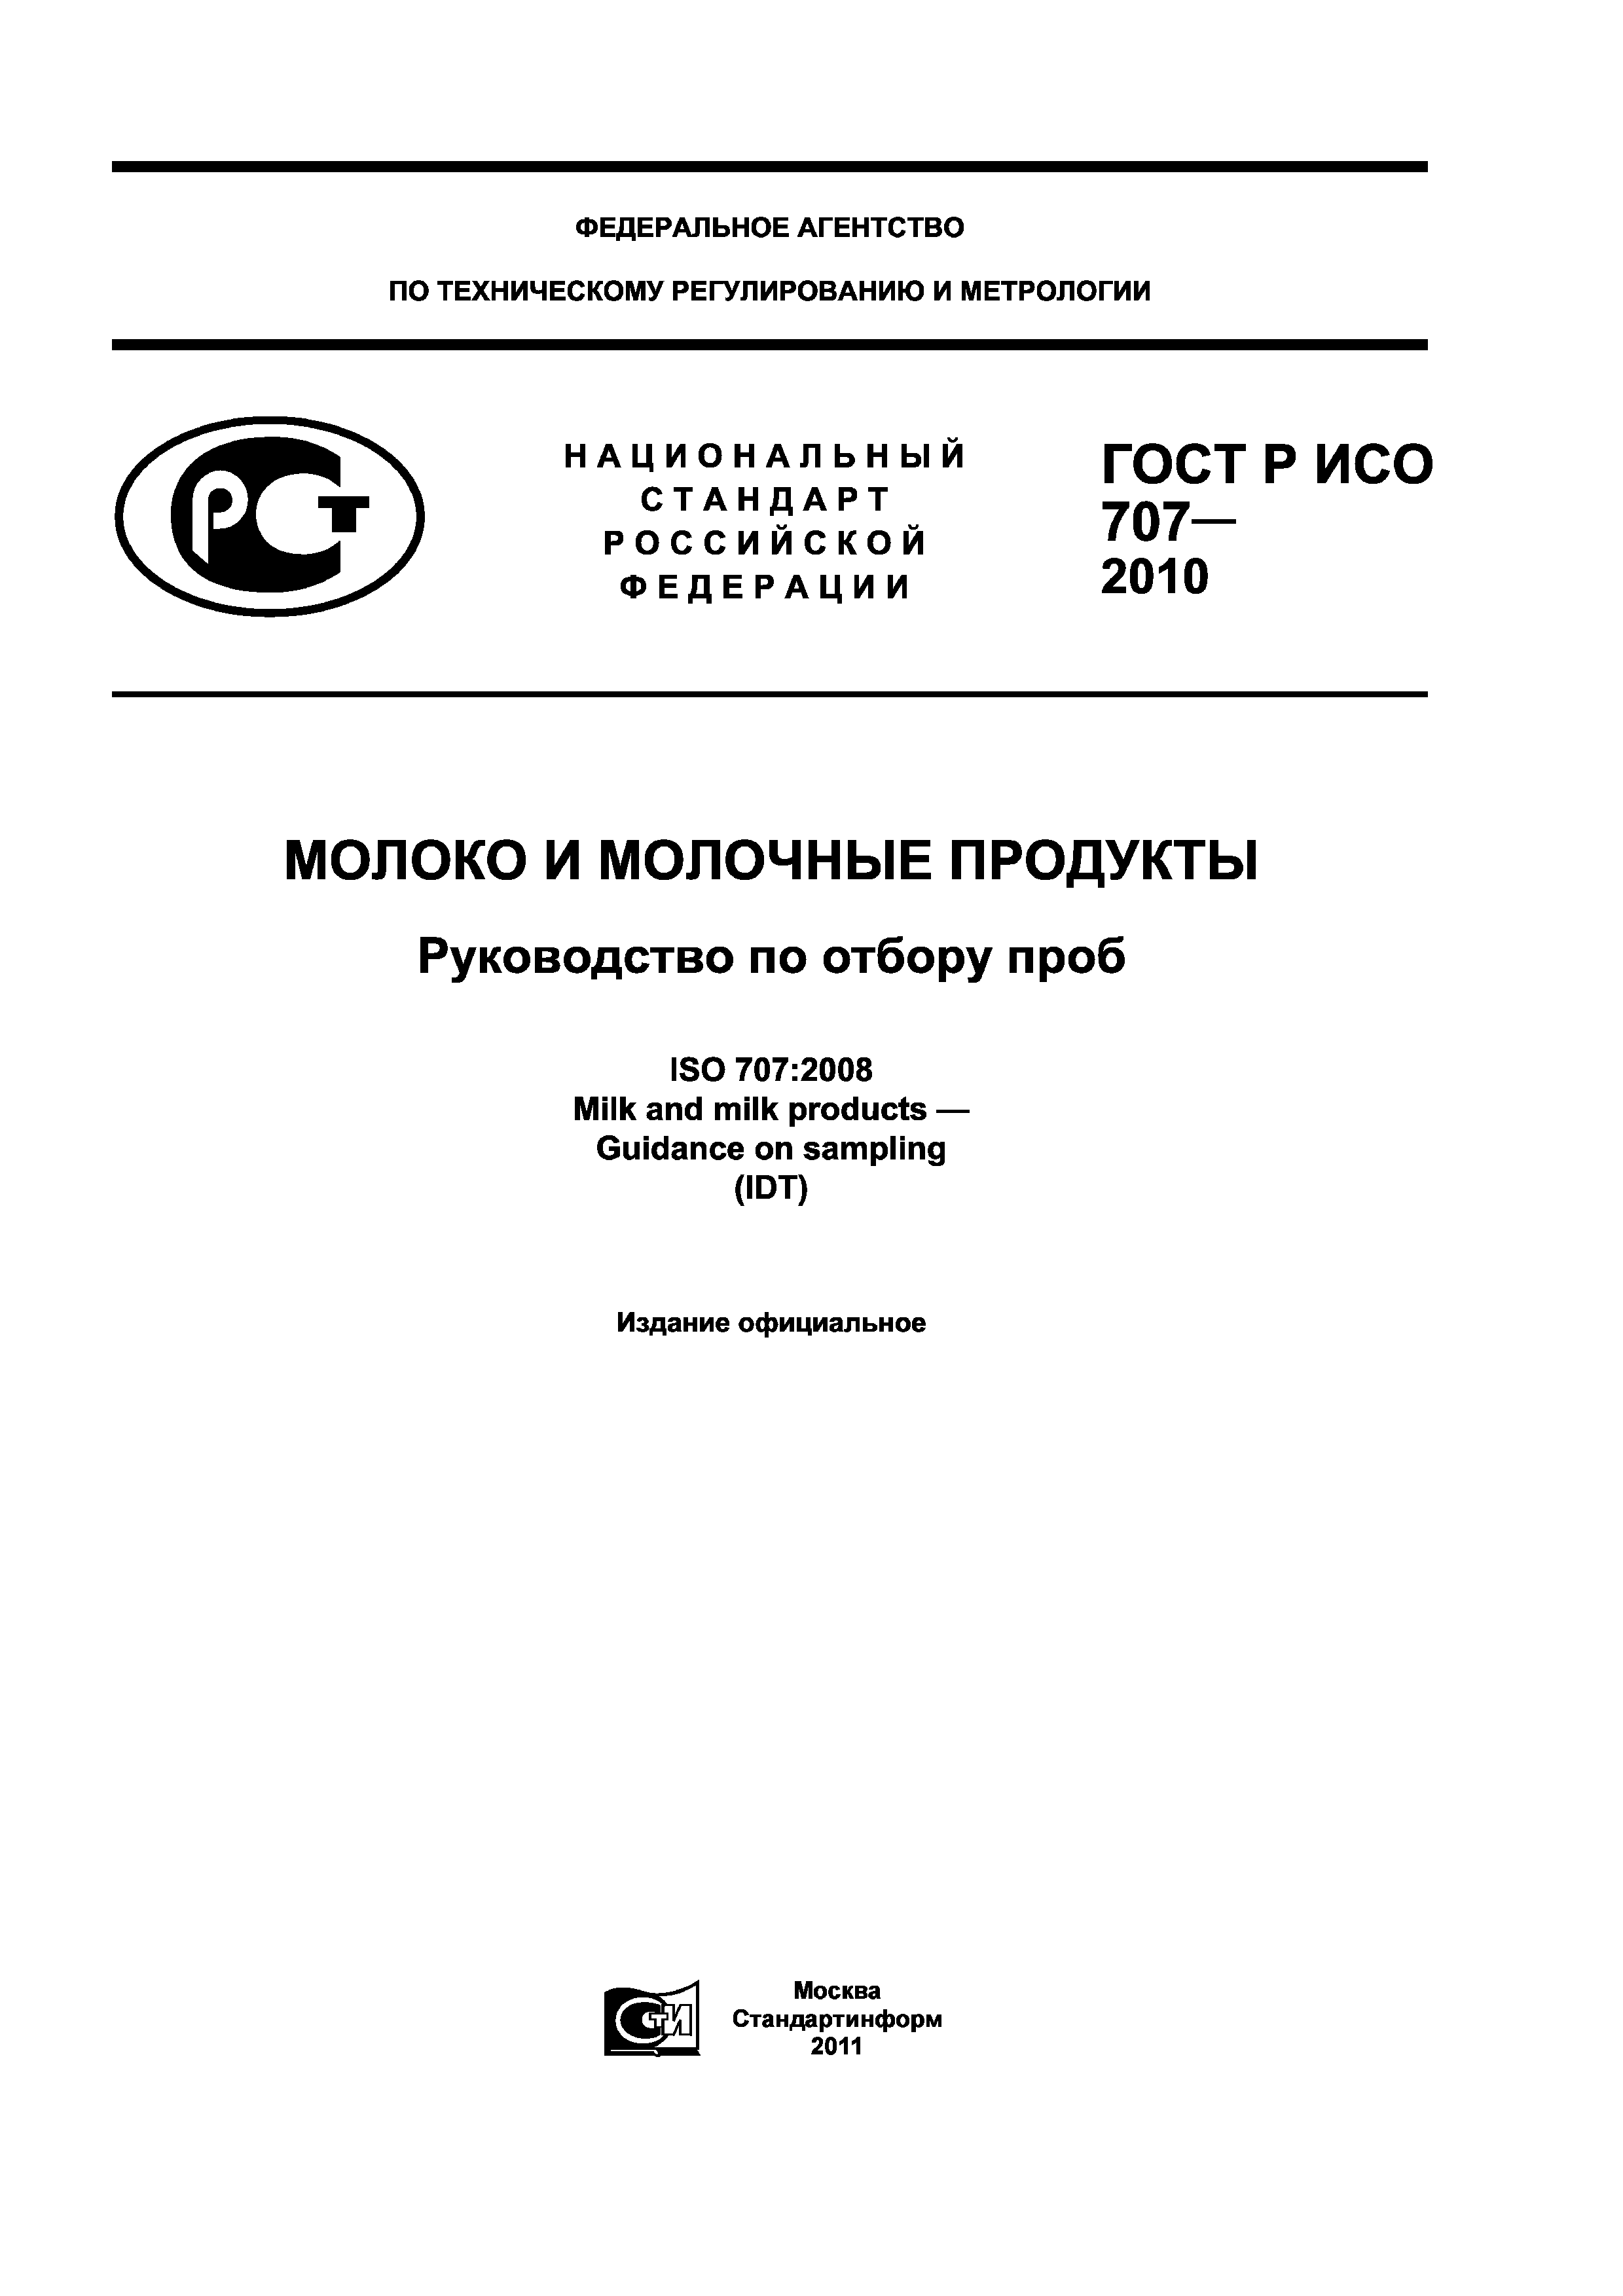 ГОСТ Р ИСО 707-2010